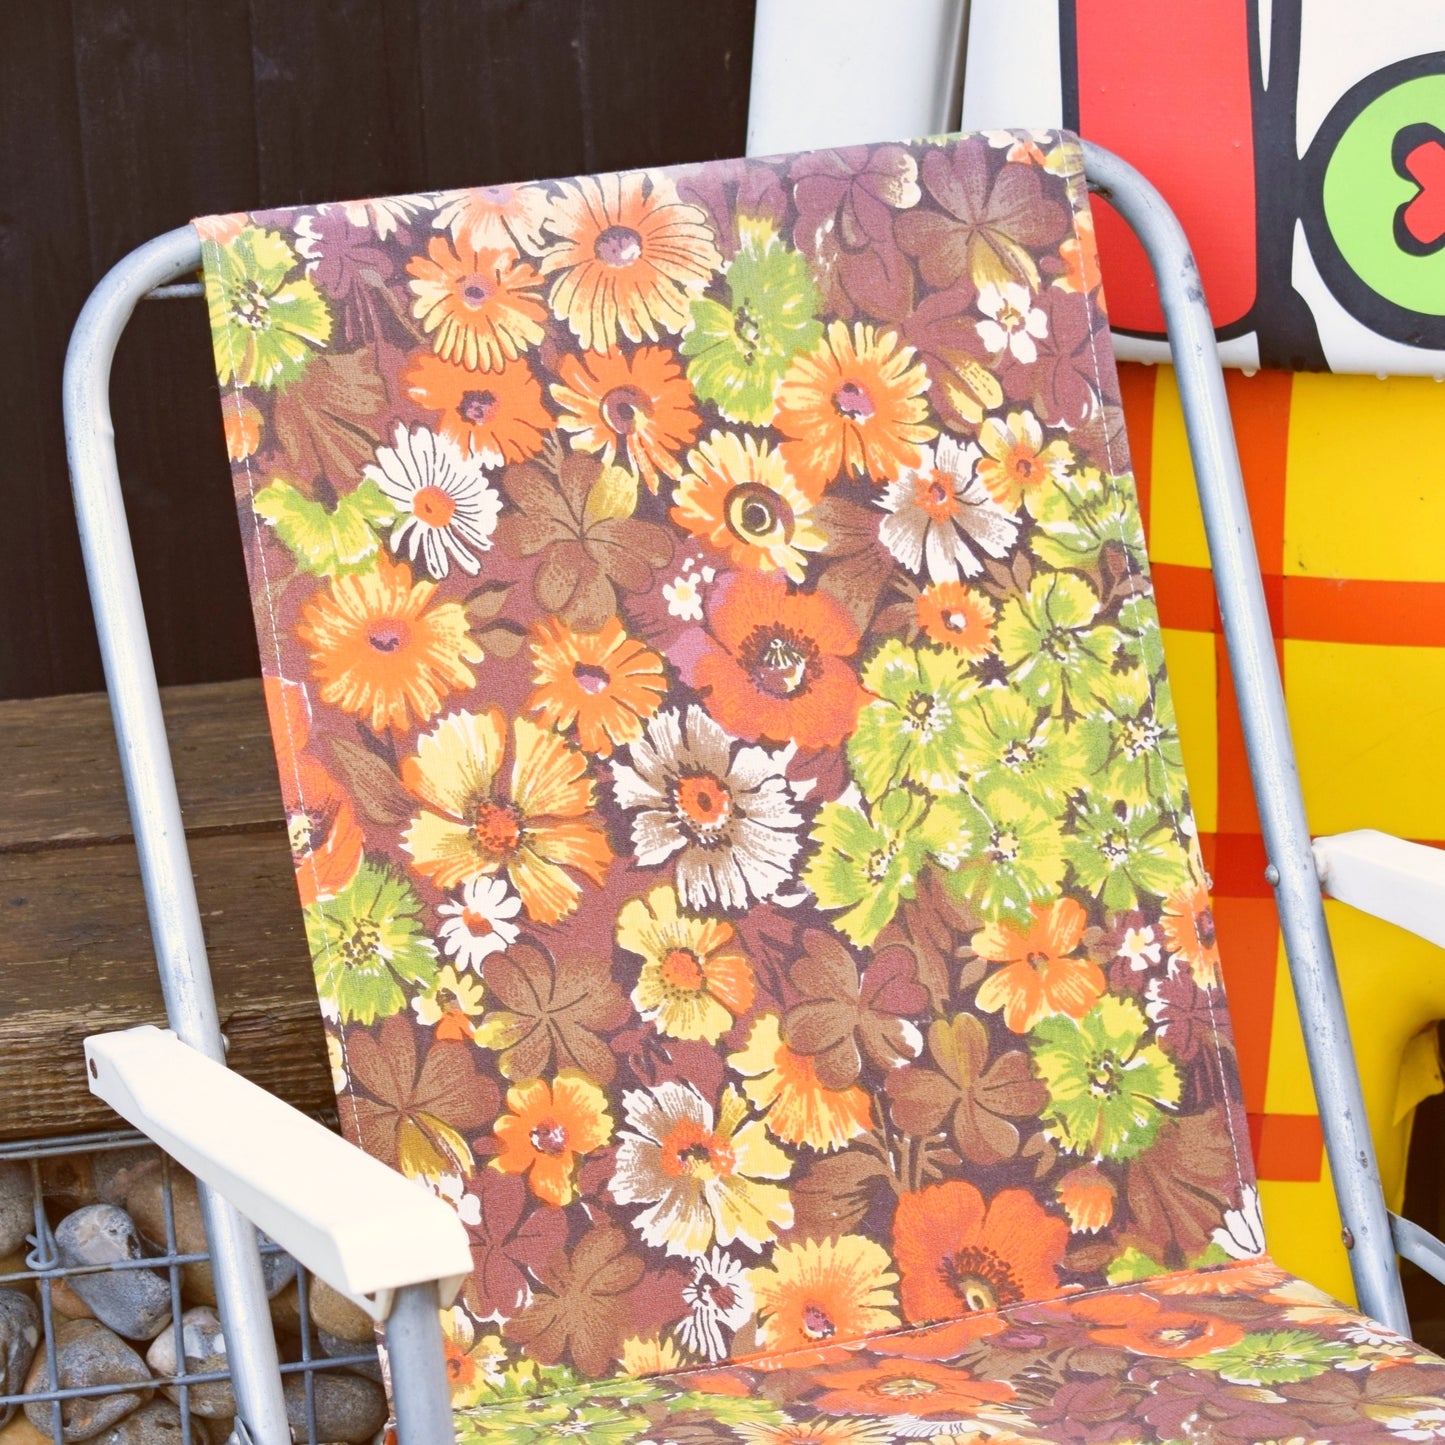 Vintage 1970s Garden Chair - Floral - Orange Brown Green